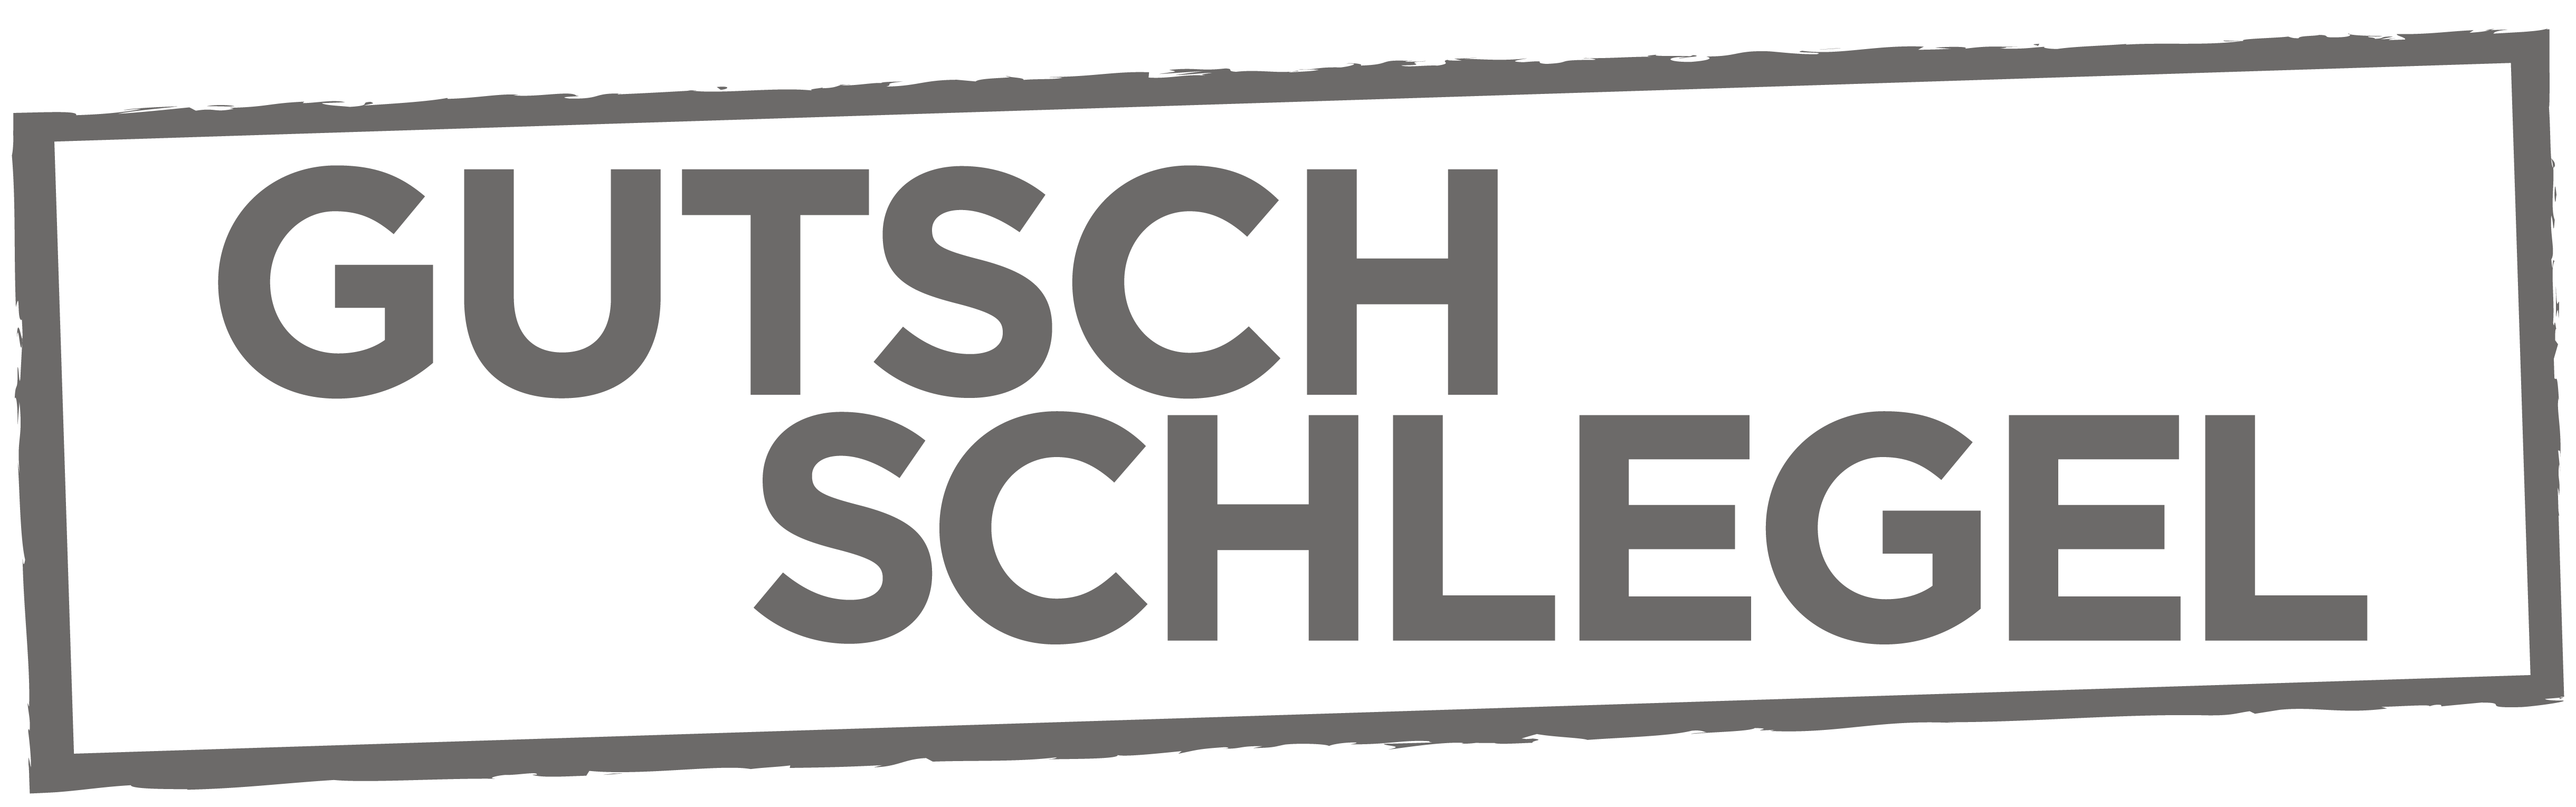 Gutsch & Schlegel Lawyers